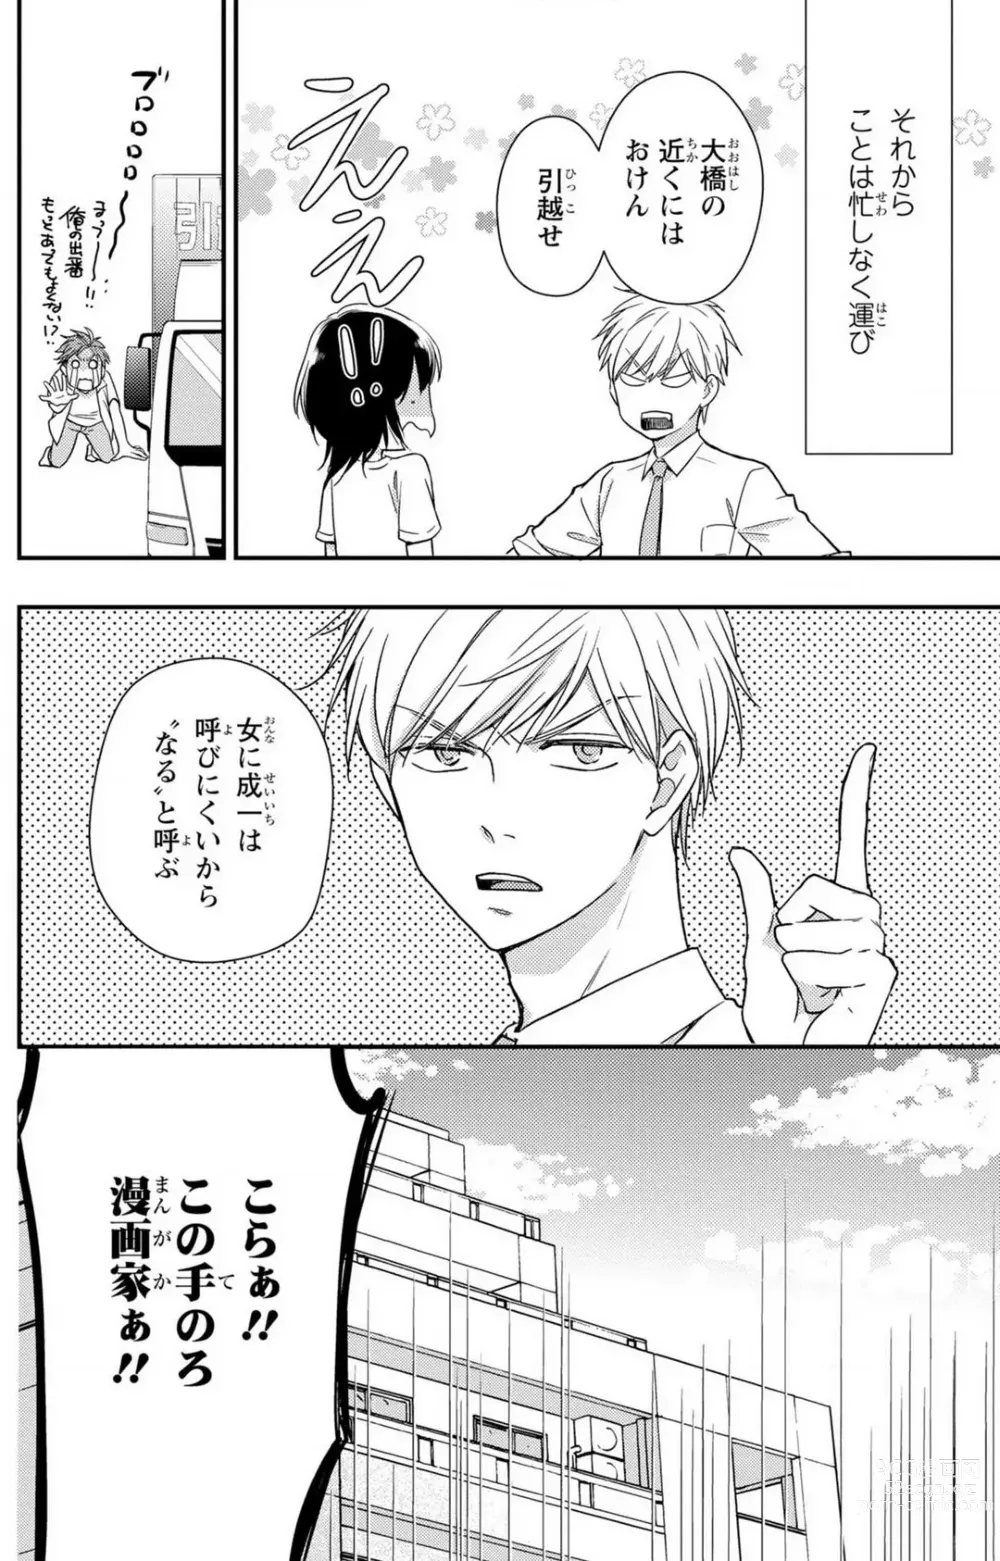 Page 209 of manga Doutei Danshi Nyotaika